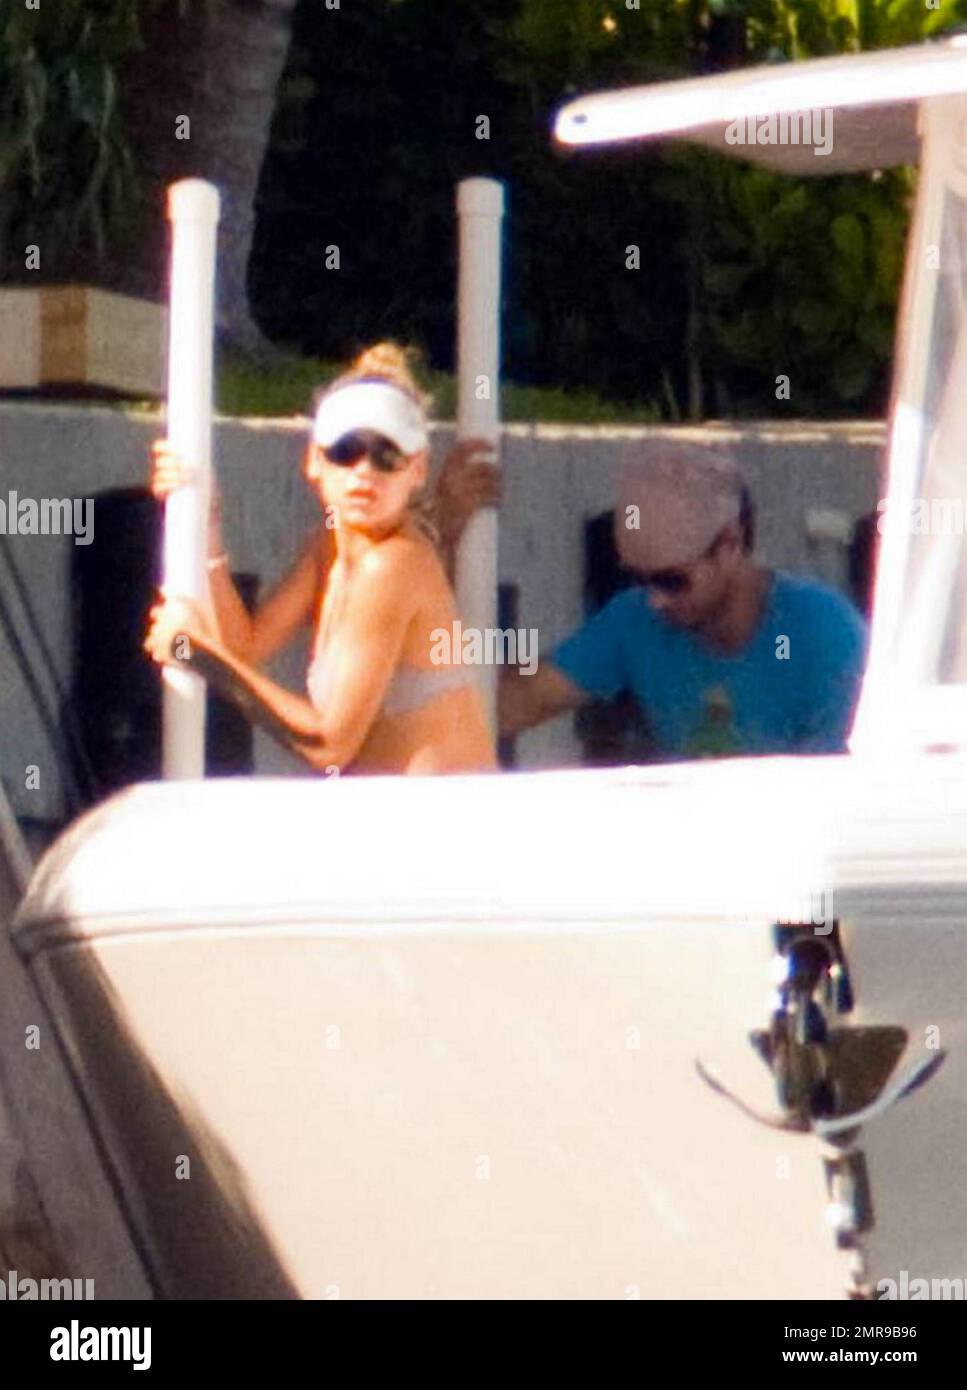 EXCLUSIVO! Enrique Iglesias y su novia vestida de bikini, la gran tenista Anna  Kournikova pasan un día romántico juntos navegando en la bahía de Biscayne.  La pareja, que según se informa está